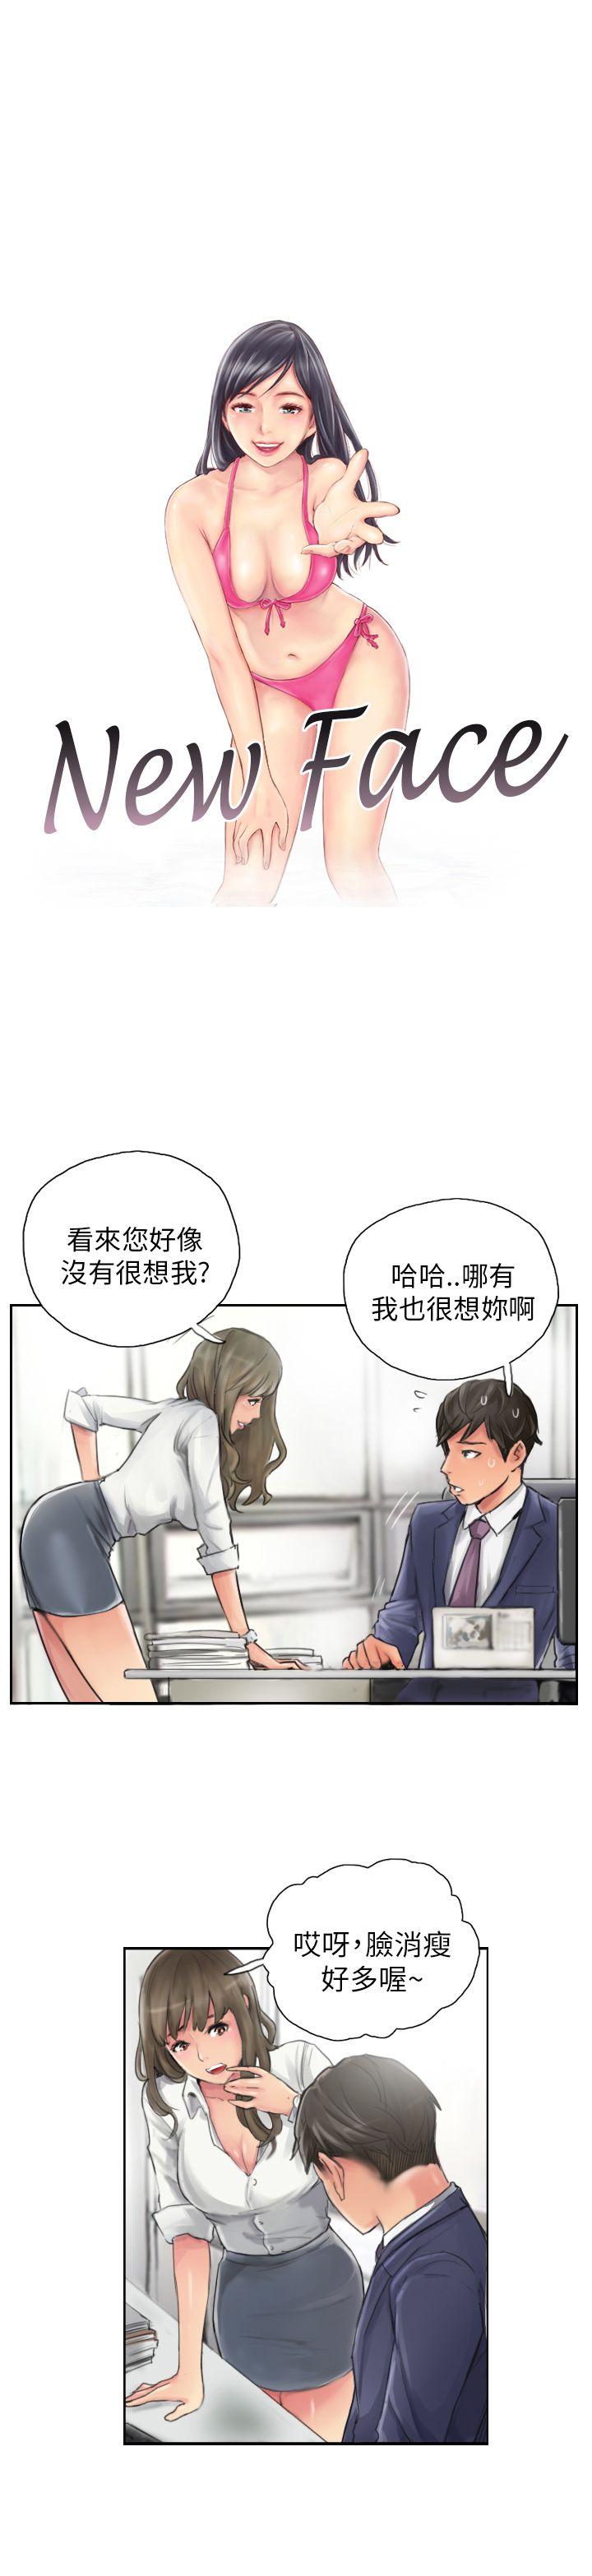 韩国污漫画 NEW FACE 第13话 1